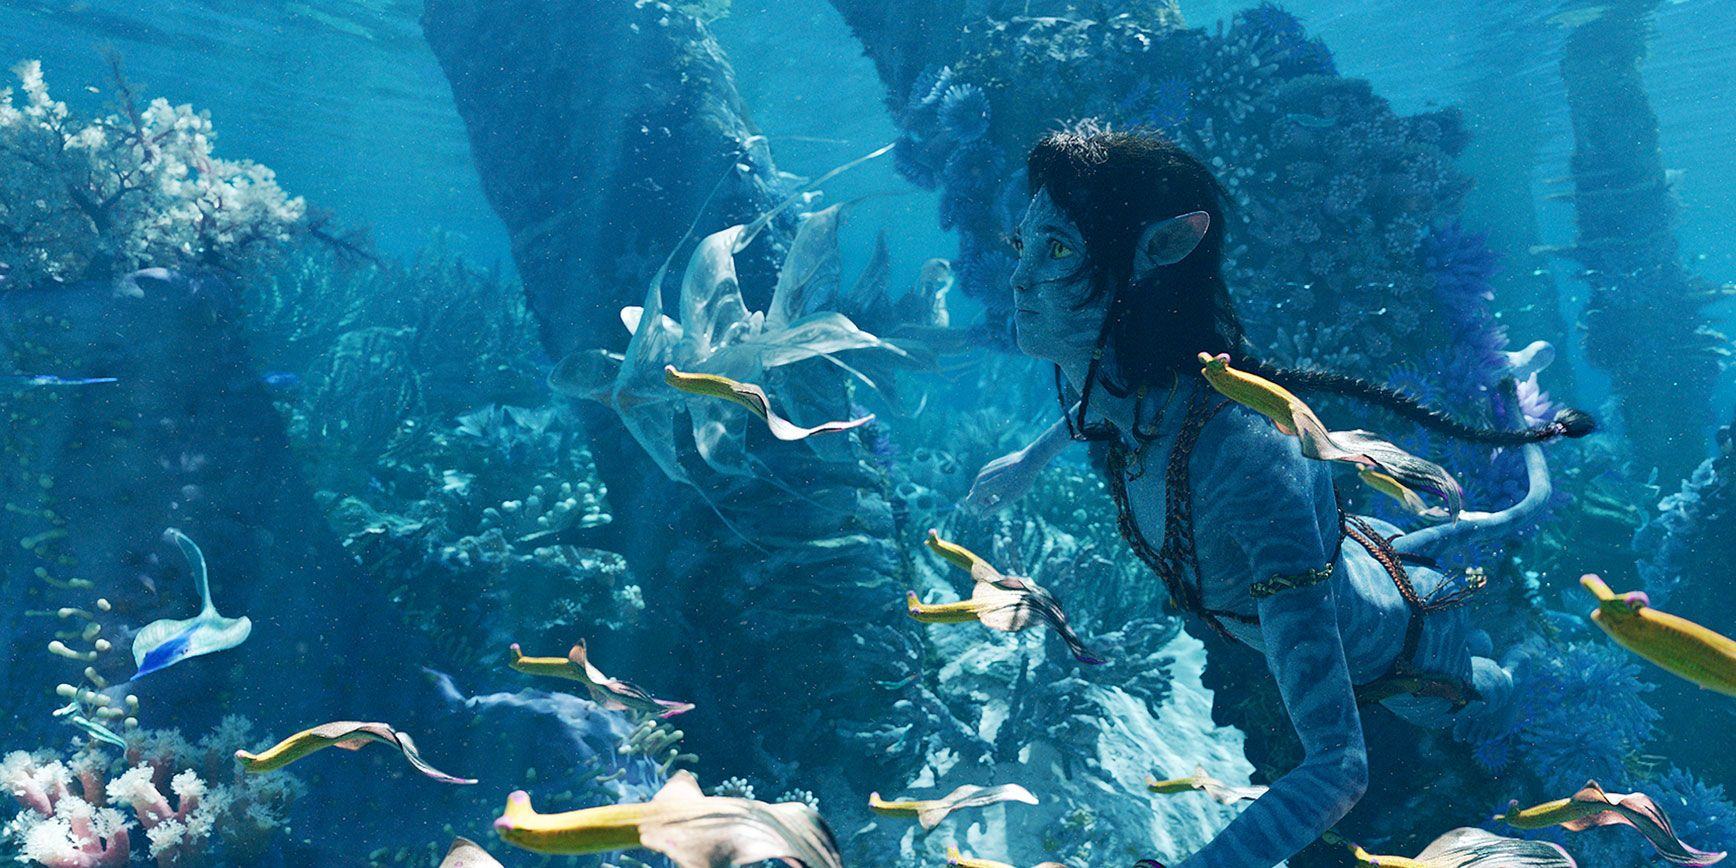 Na'vi Avatar 2 Swimming